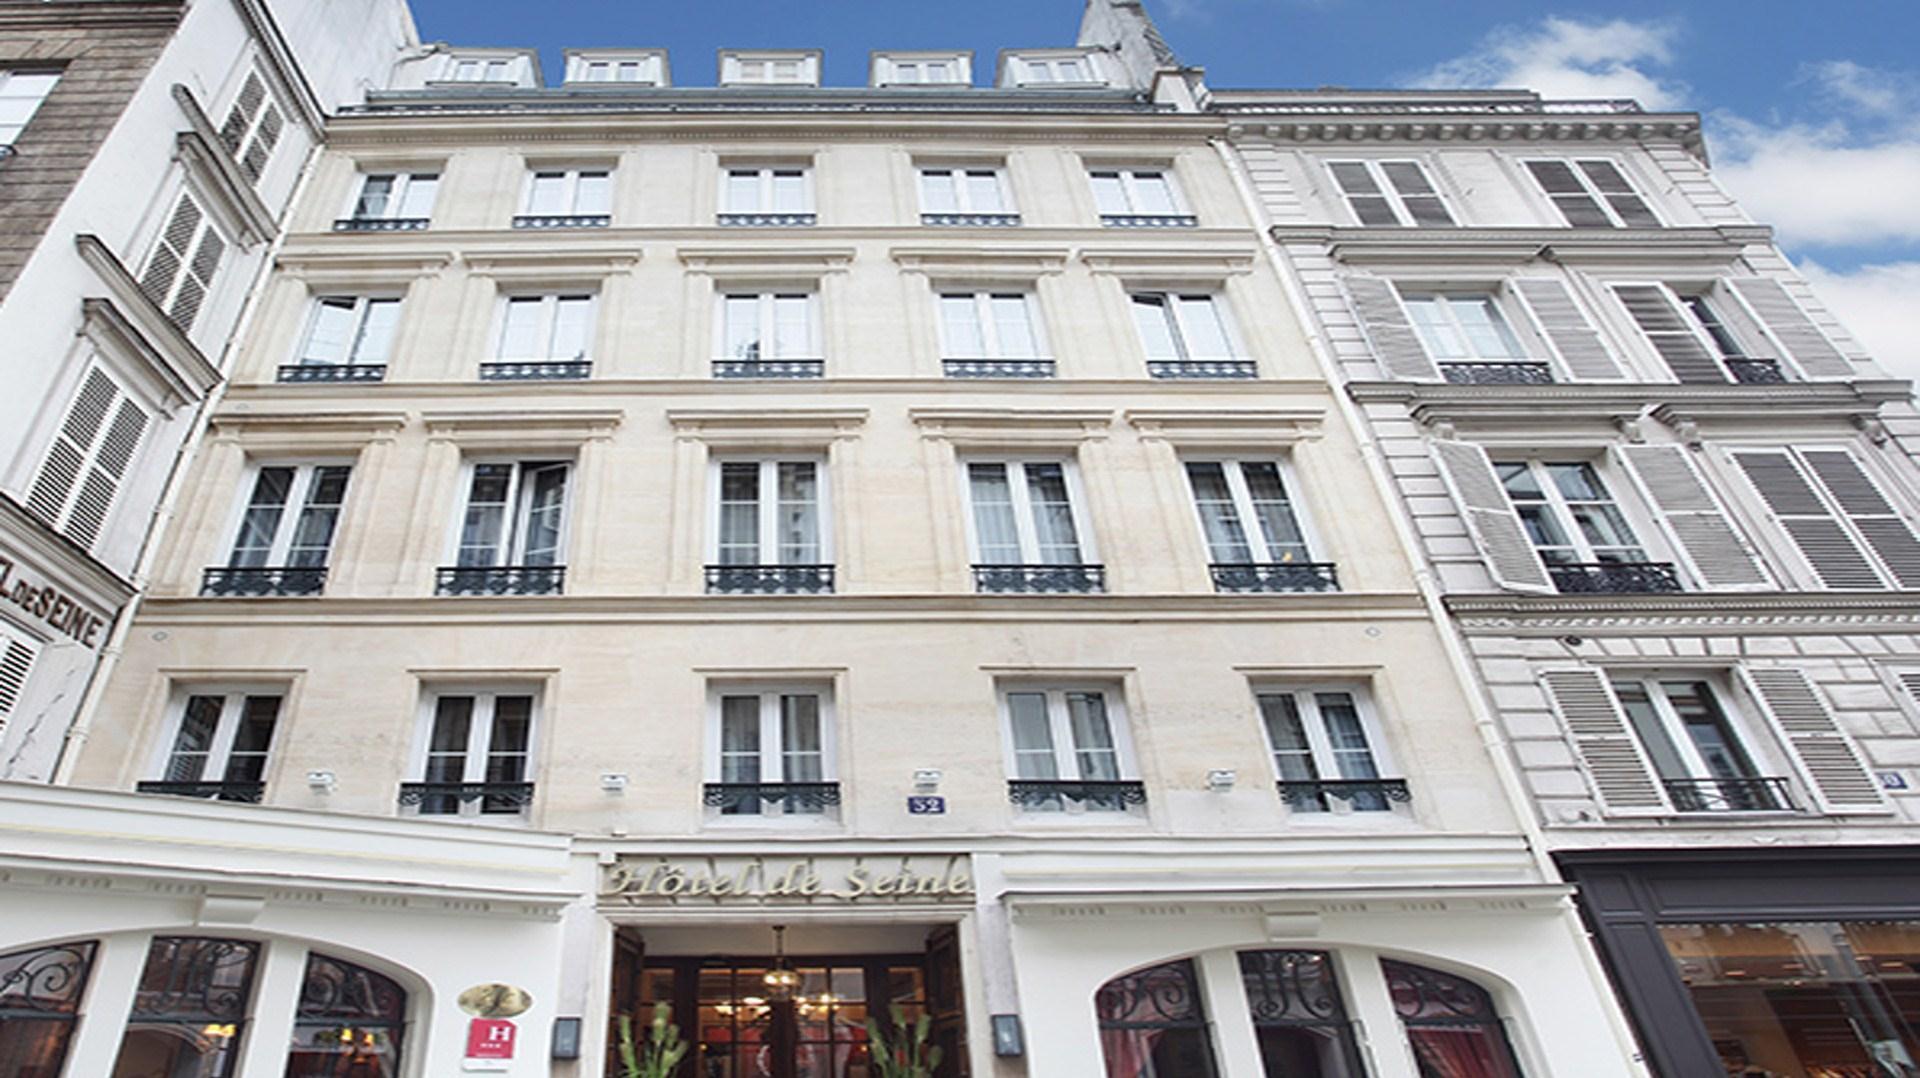 Hotel de Seine in Paris, FR